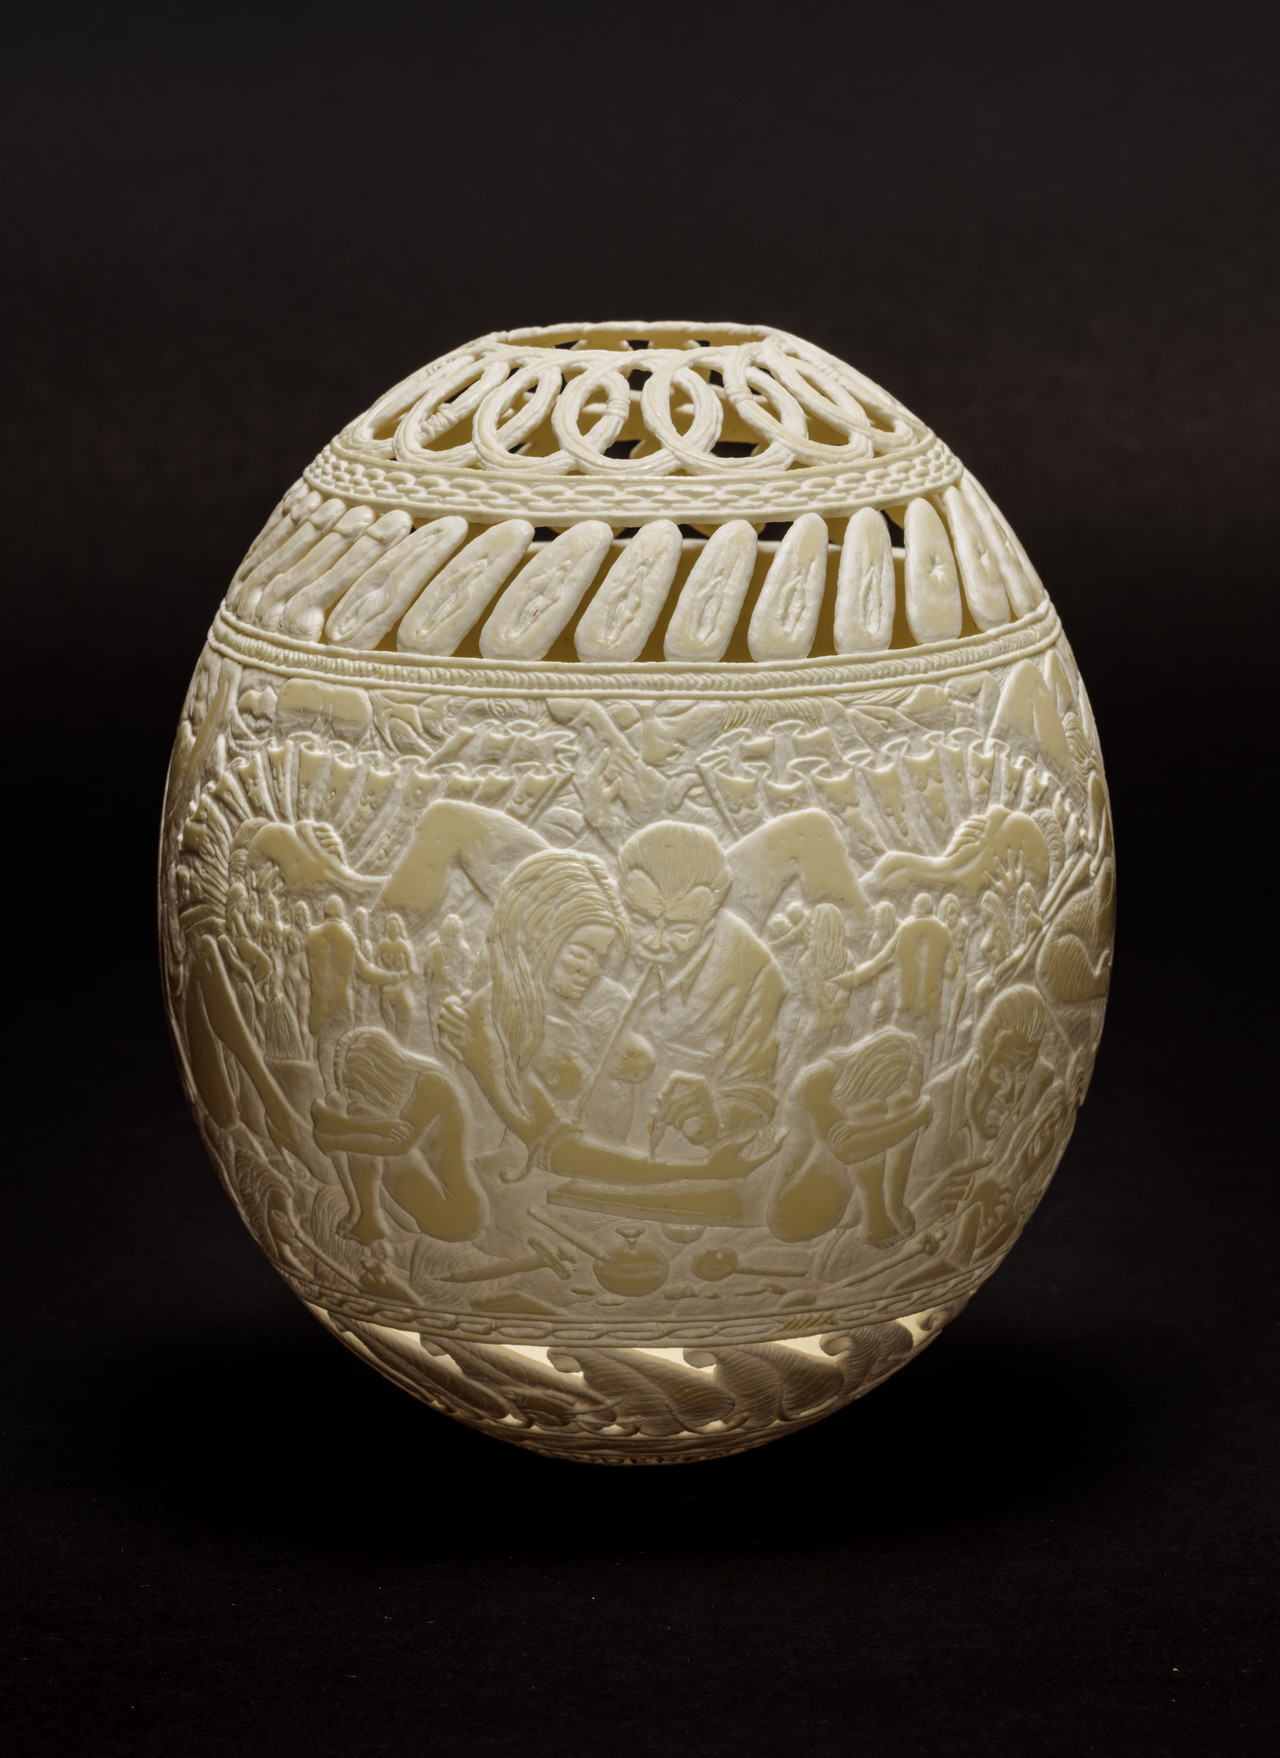 Gil Batle, Panderer, 2016, Carved Ostrich Egg, 16.5 x 12.7 x 12.7 cm, GB 001